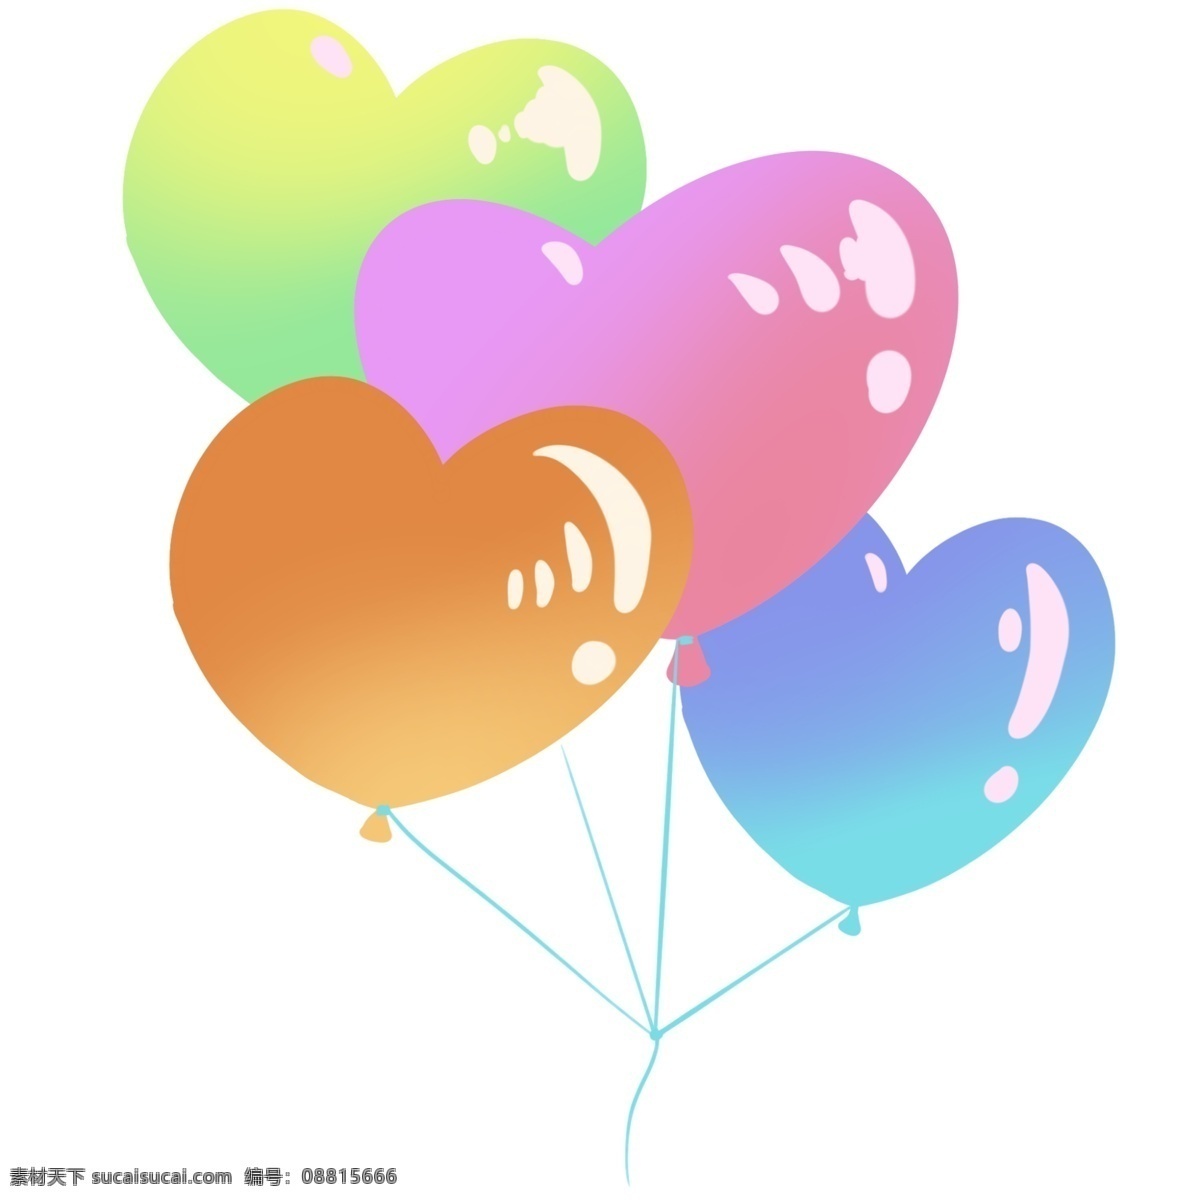 飘荡 心形 气球 插画 心形的气球 卡通插画 心形插画 心形产品 心形物品 心形小物 漂亮的气球